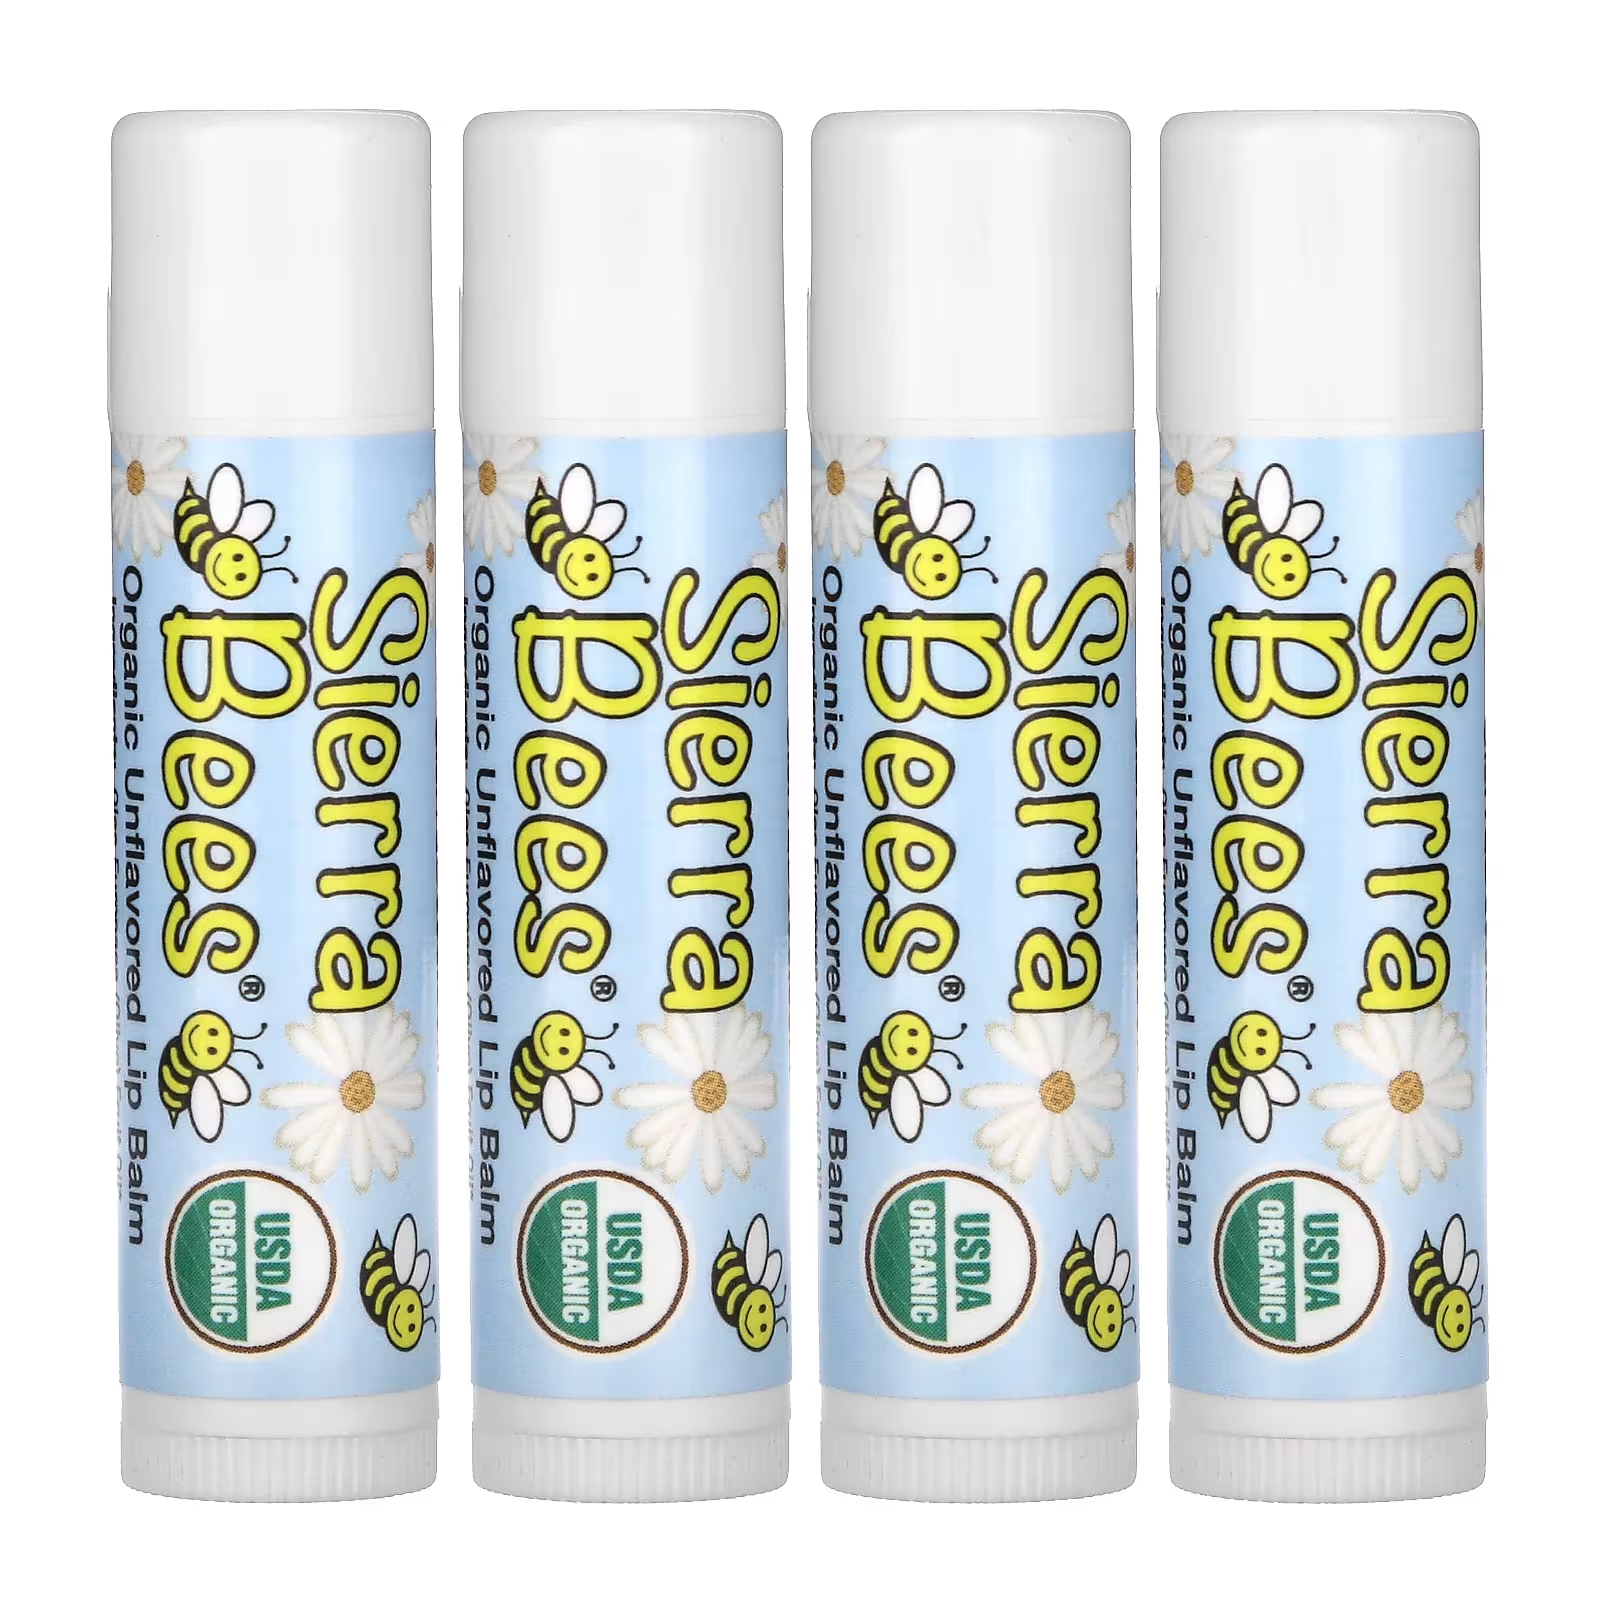 Органические бальзамы для губ Sierra Bees, 4 упаковки по 4,25 г